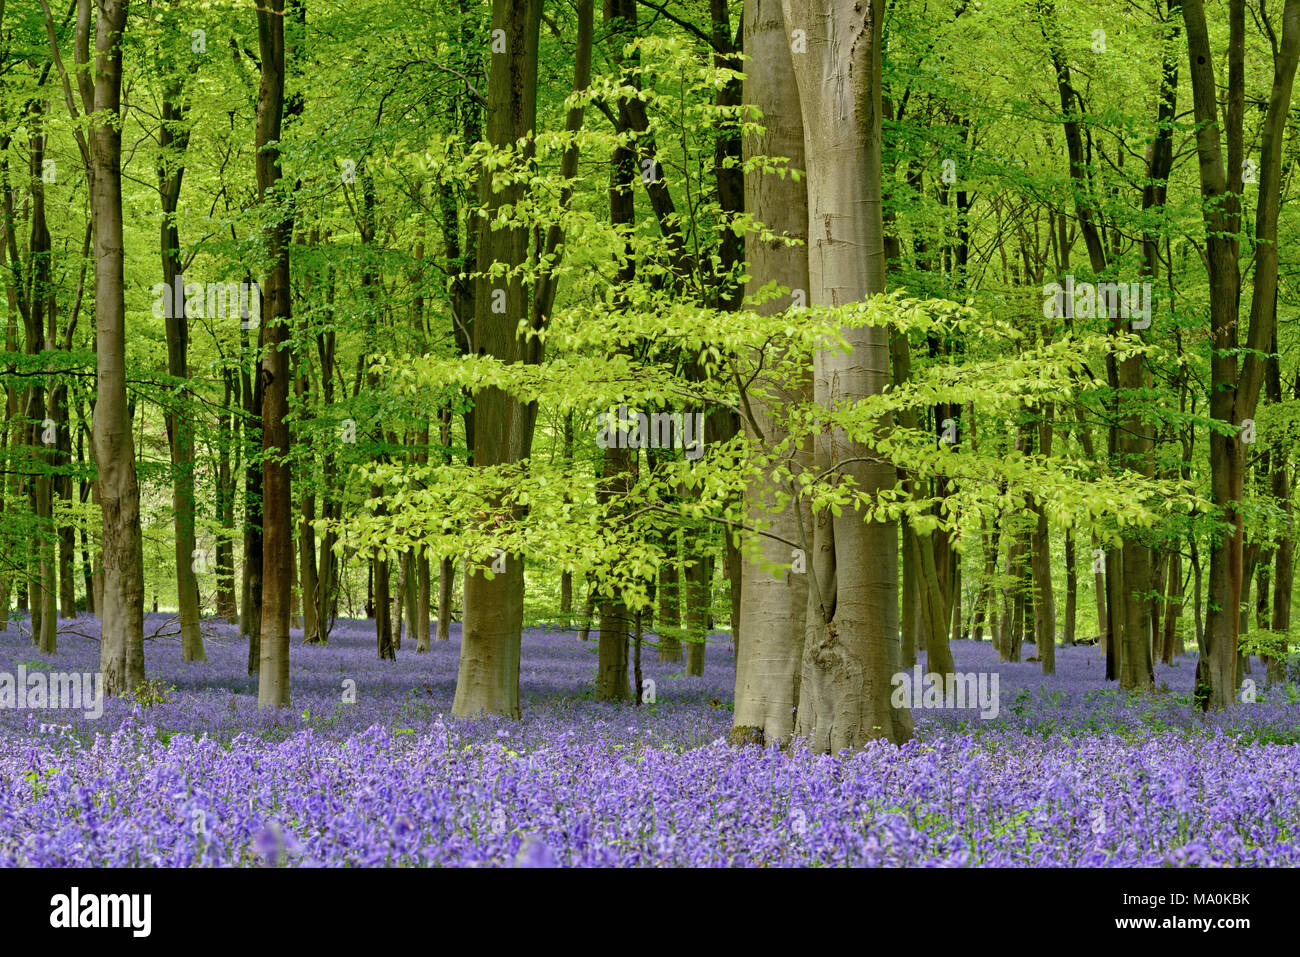 Bluebell Waldgebiet in der Nähe von Micheldever in Hampshire, während Ende April und Anfang Mai die Wälder um diesen Bereich durch einen Teppich umgewandelt werden Stockfoto